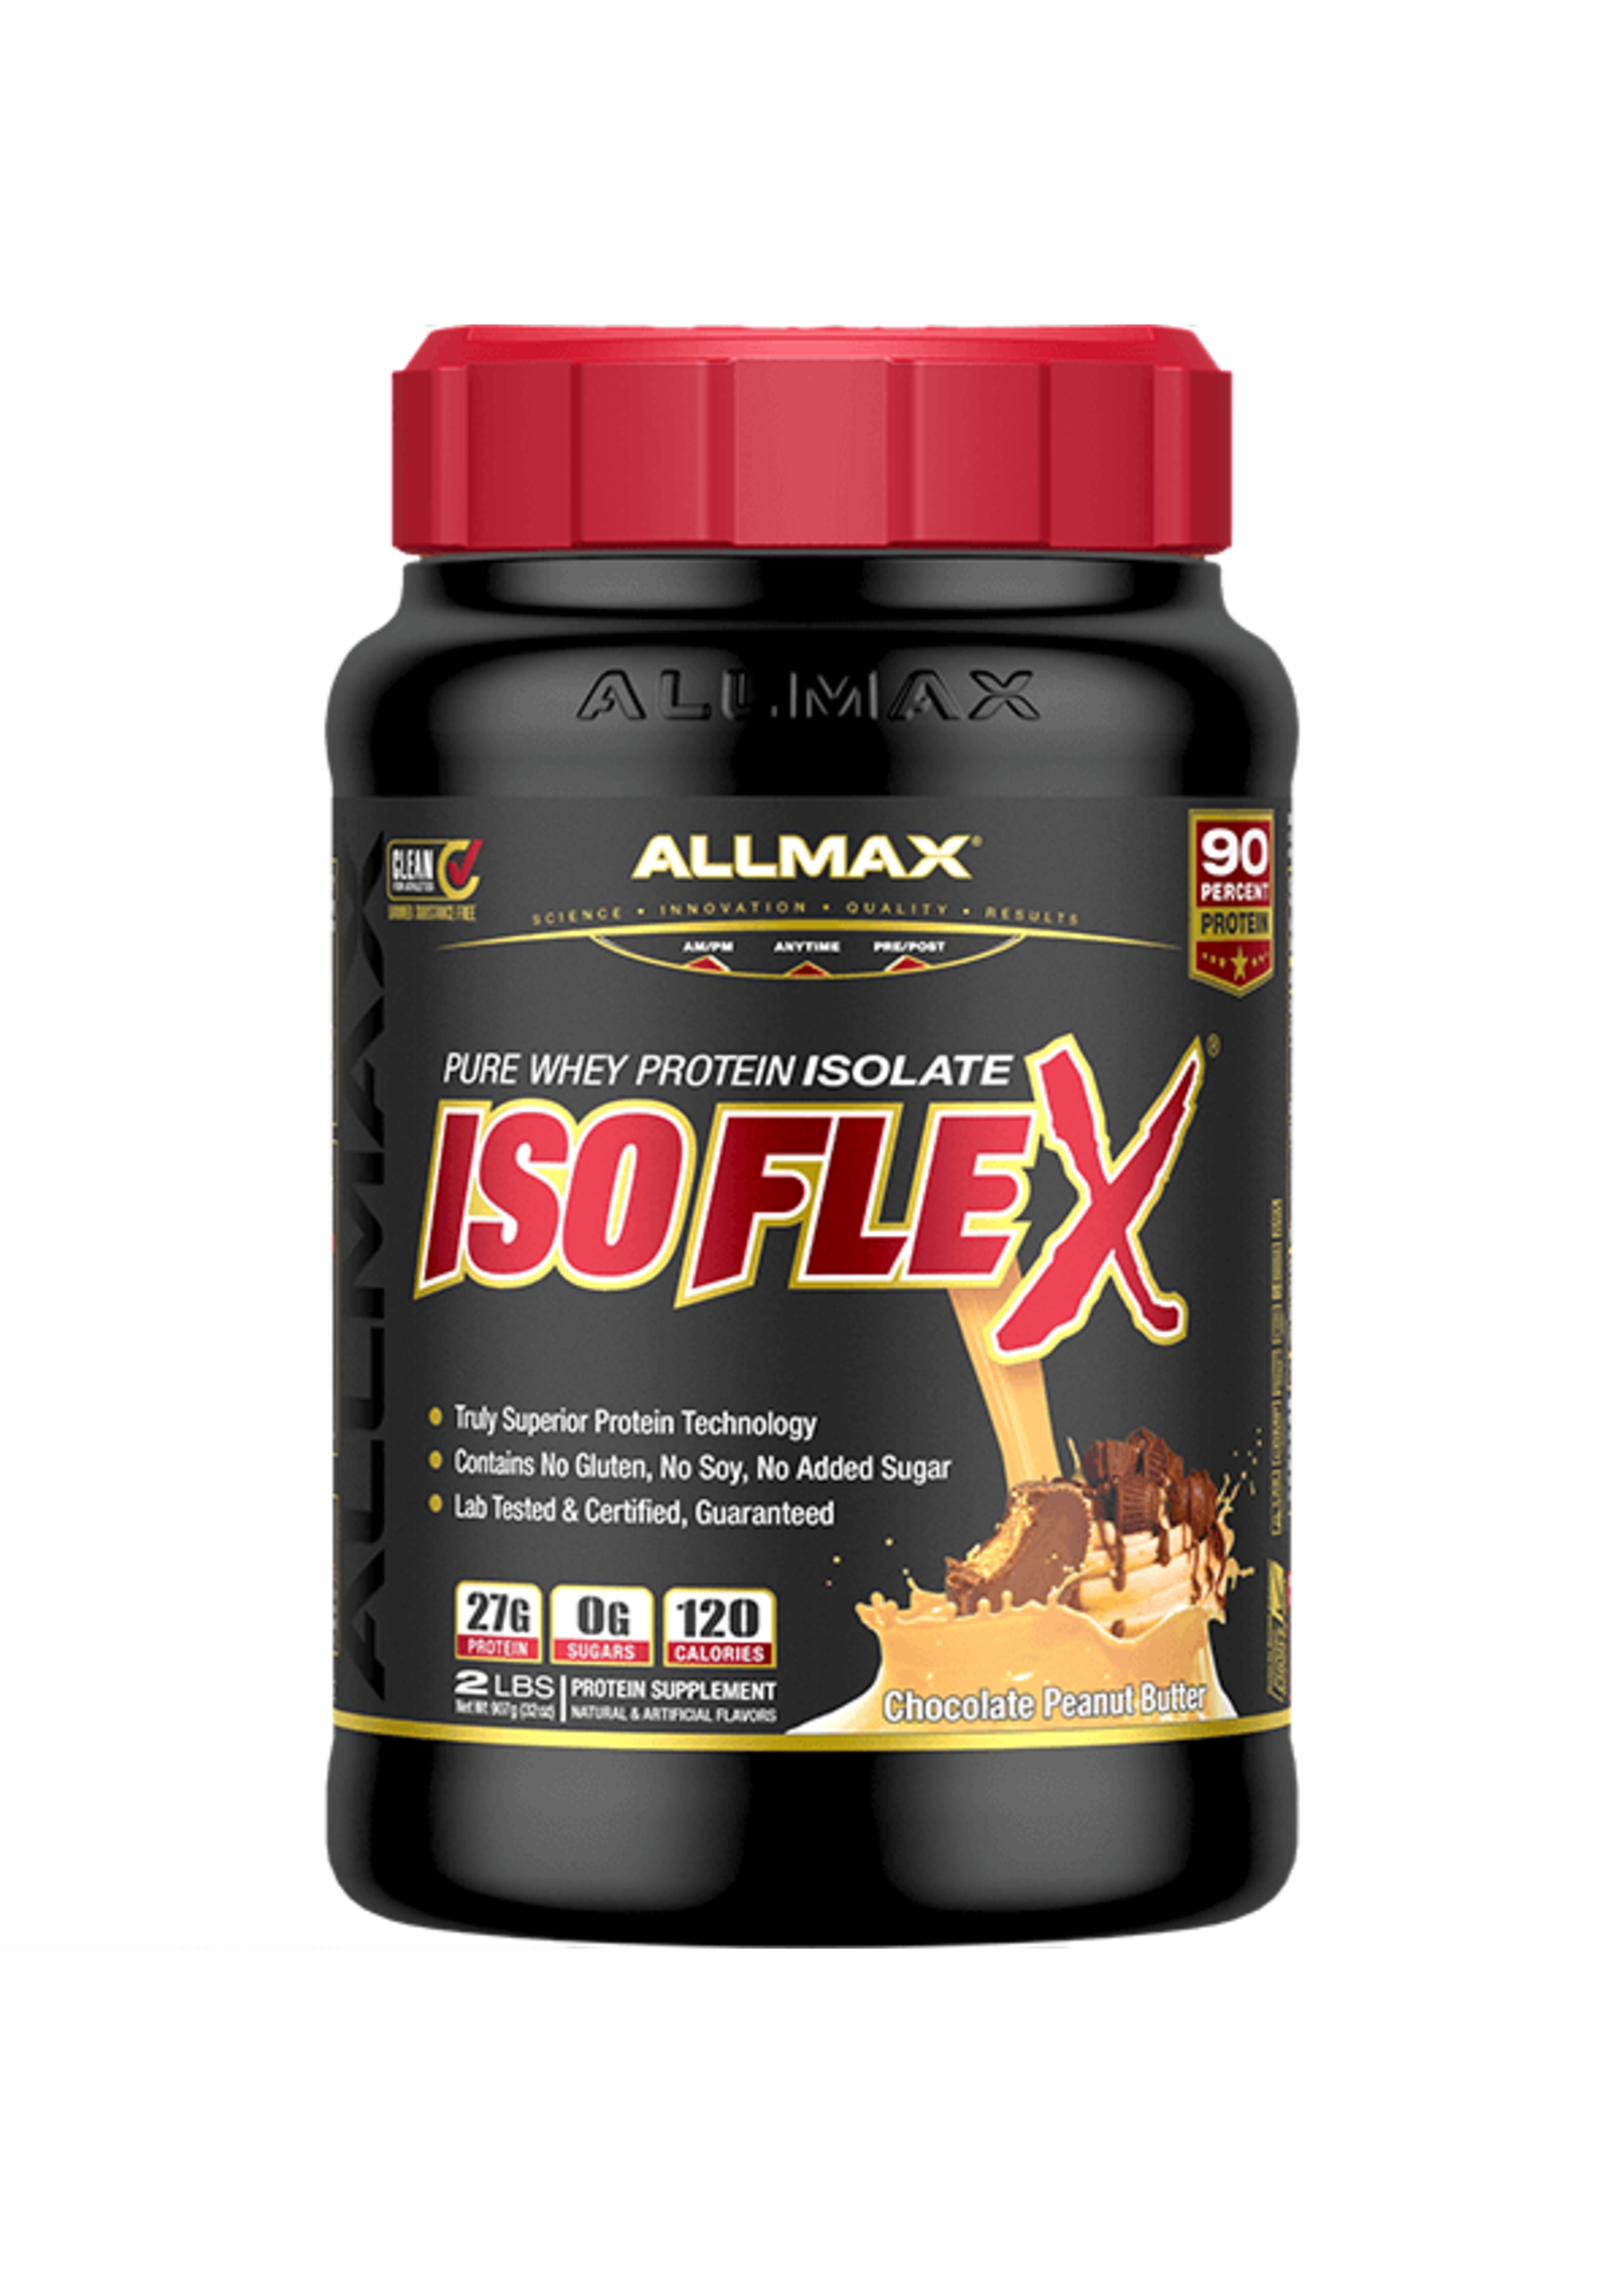 Allmax IsoFlex